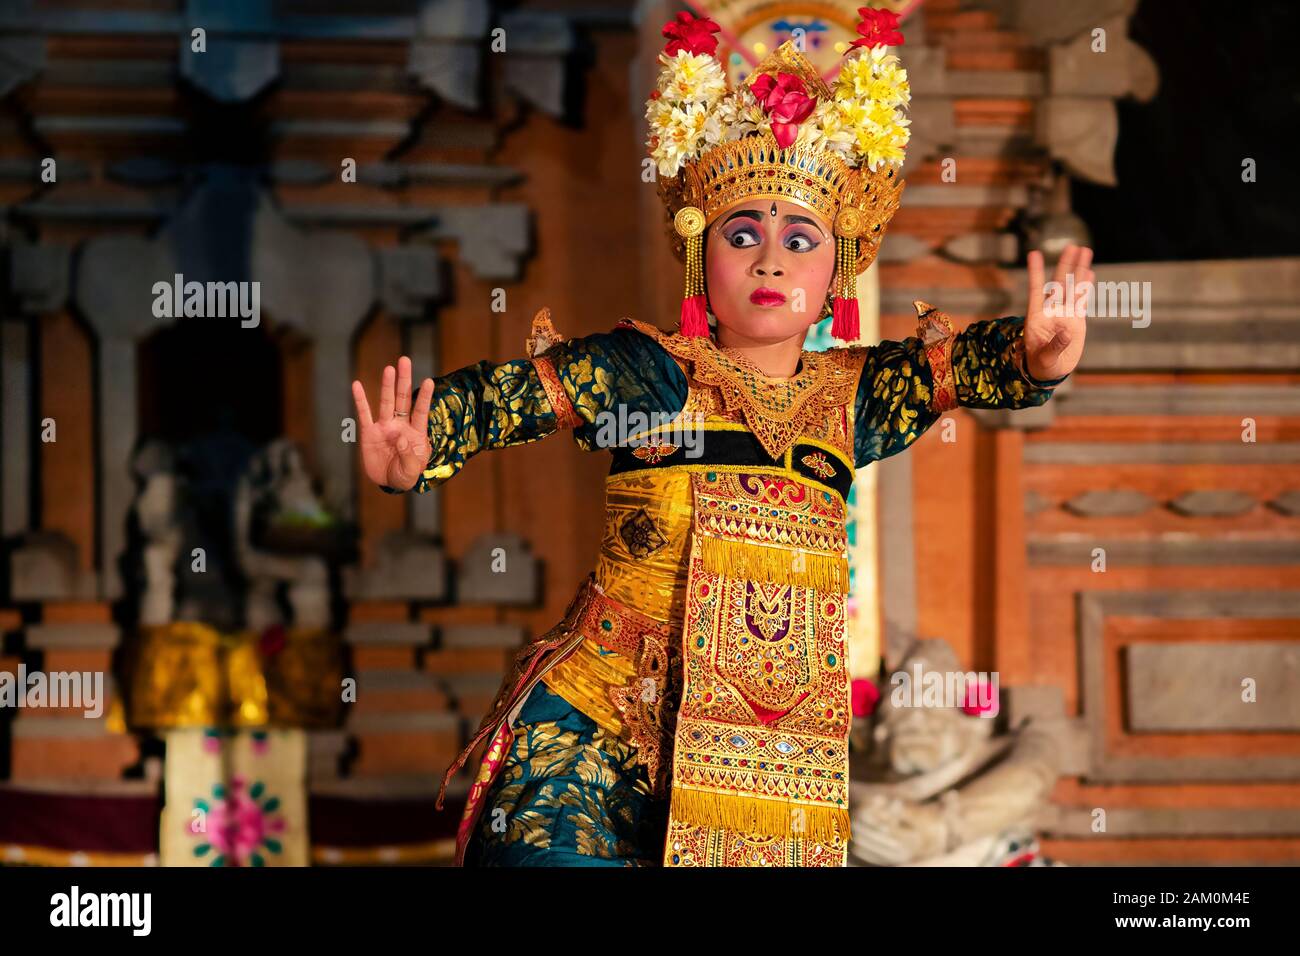 Danseuse balinaise qui interprète la danse Legong avec des costumes traditionnels au temple Pura Saraswati à Ubud, Bali, Indonésie. Banque D'Images